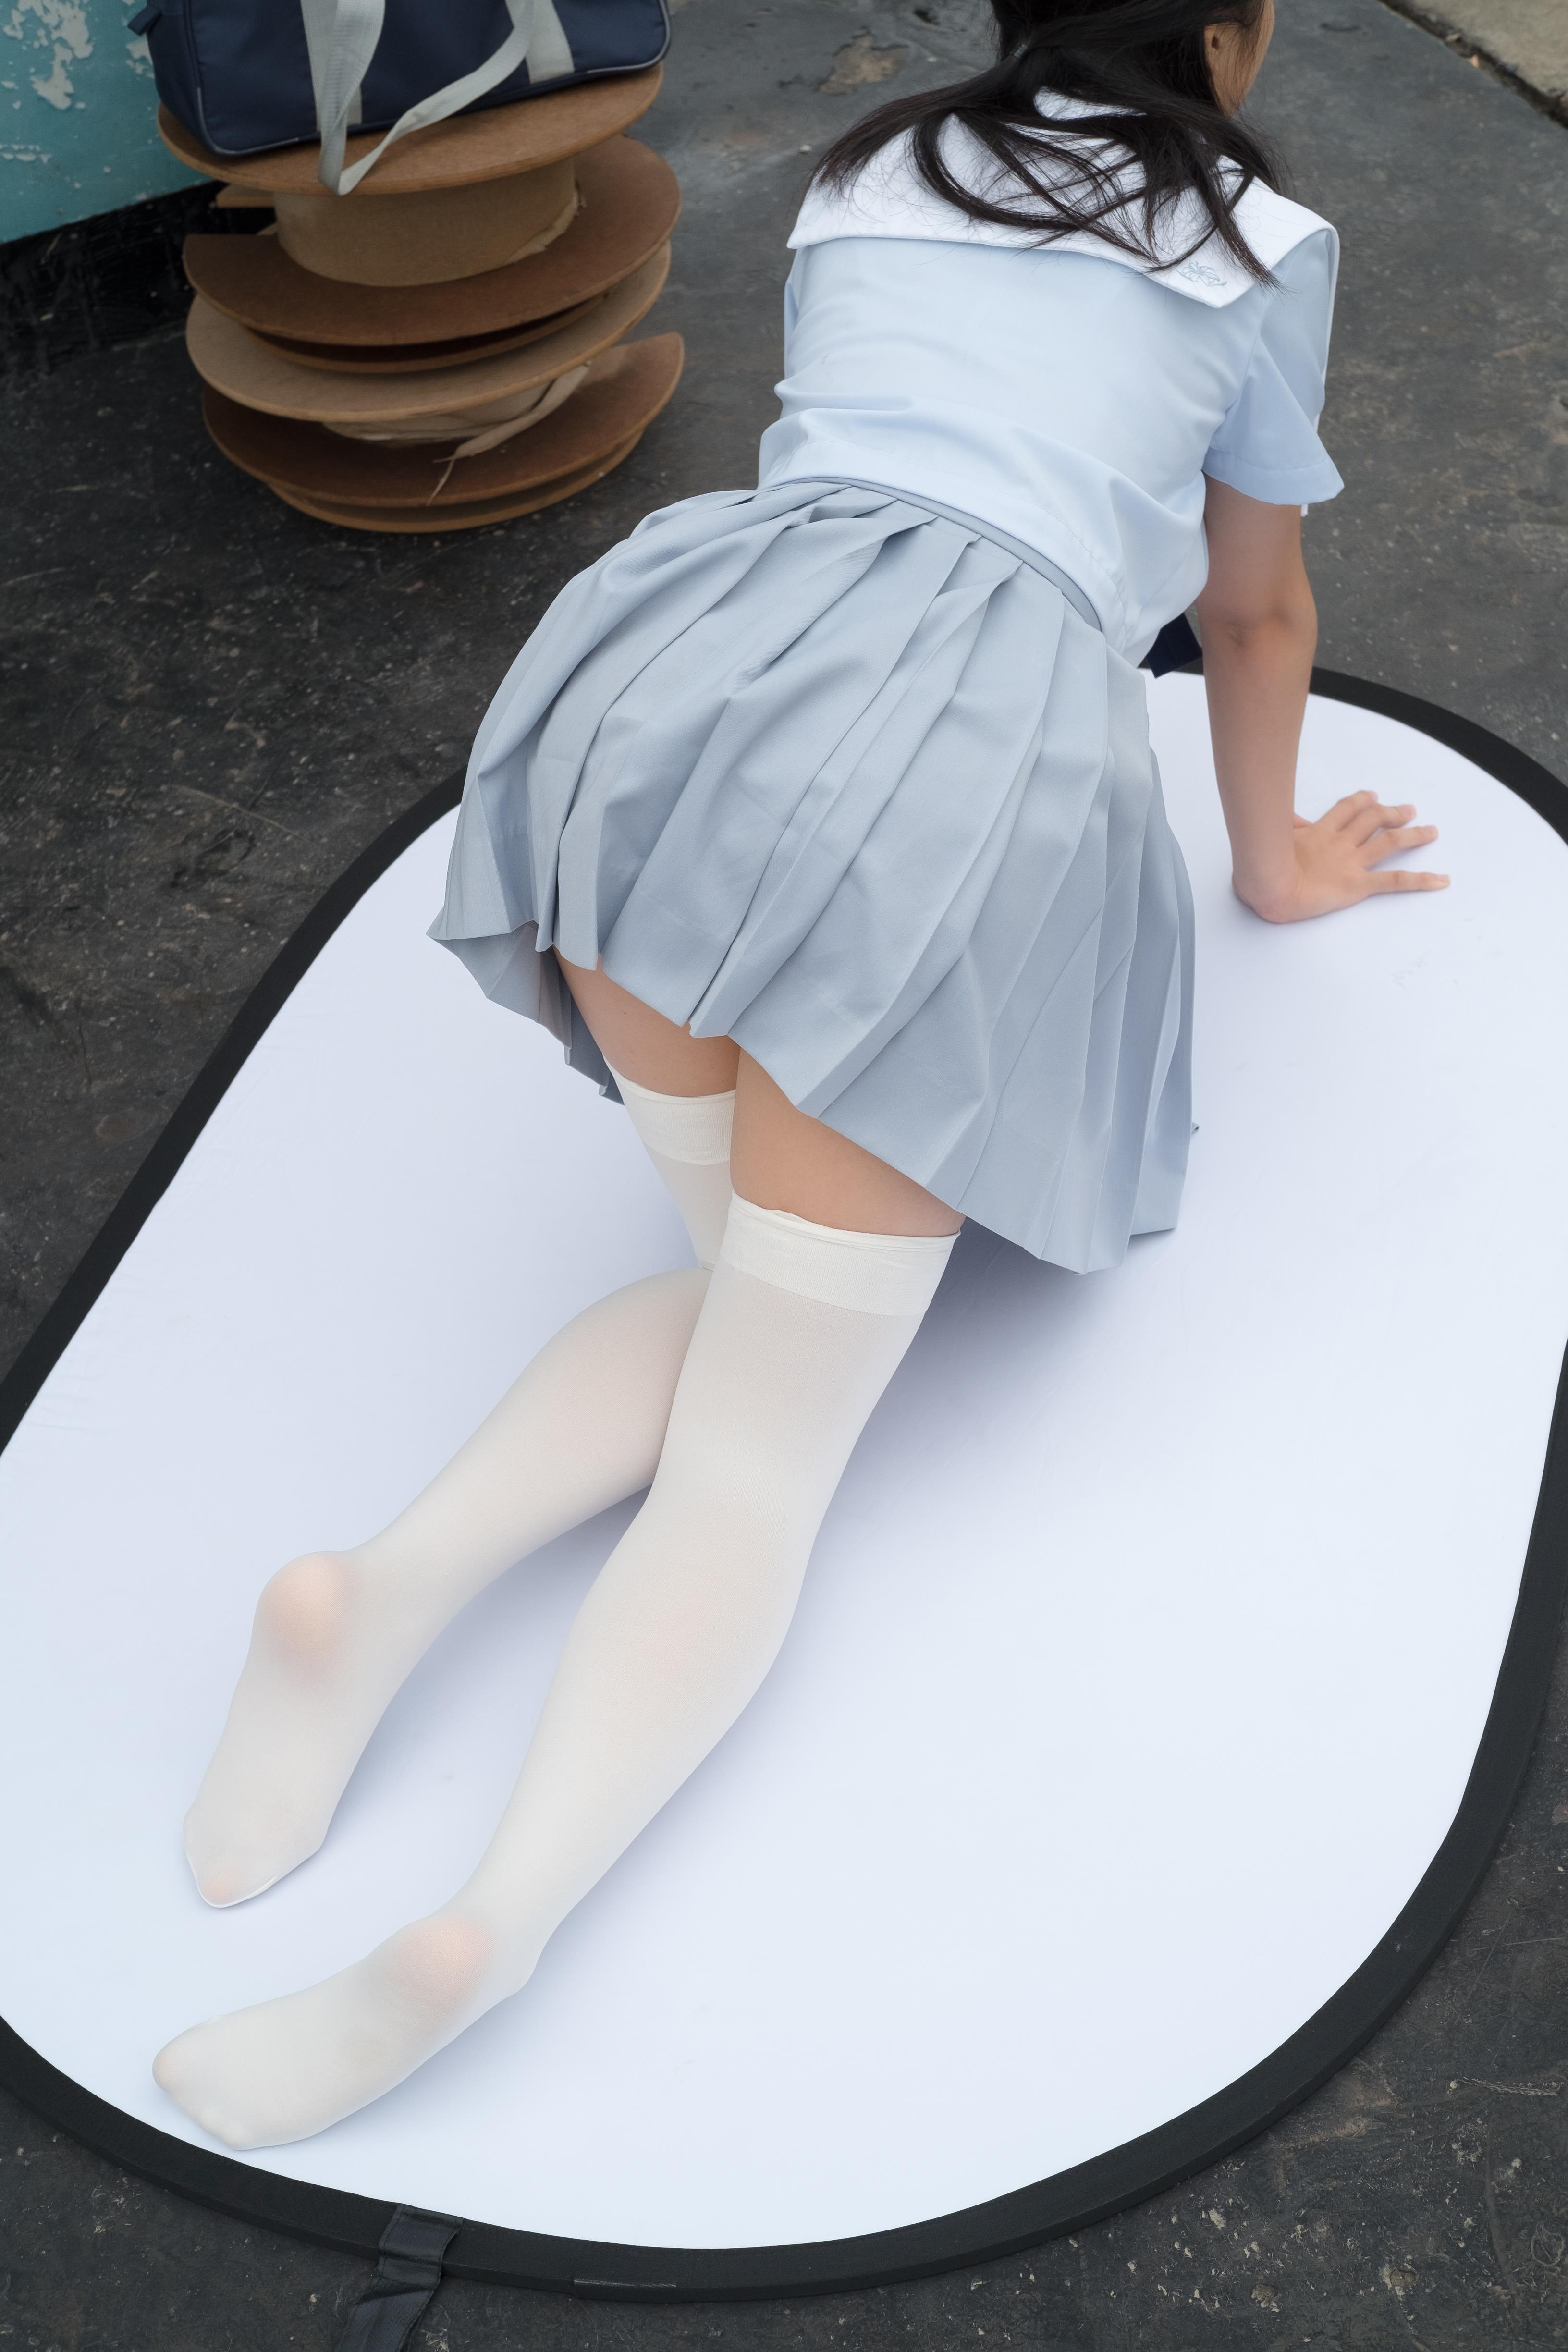 [森萝财团]萝莉R15-036 淡蓝色高中女生制服短裙加白色丝袜美腿玉足性感私房写真集,